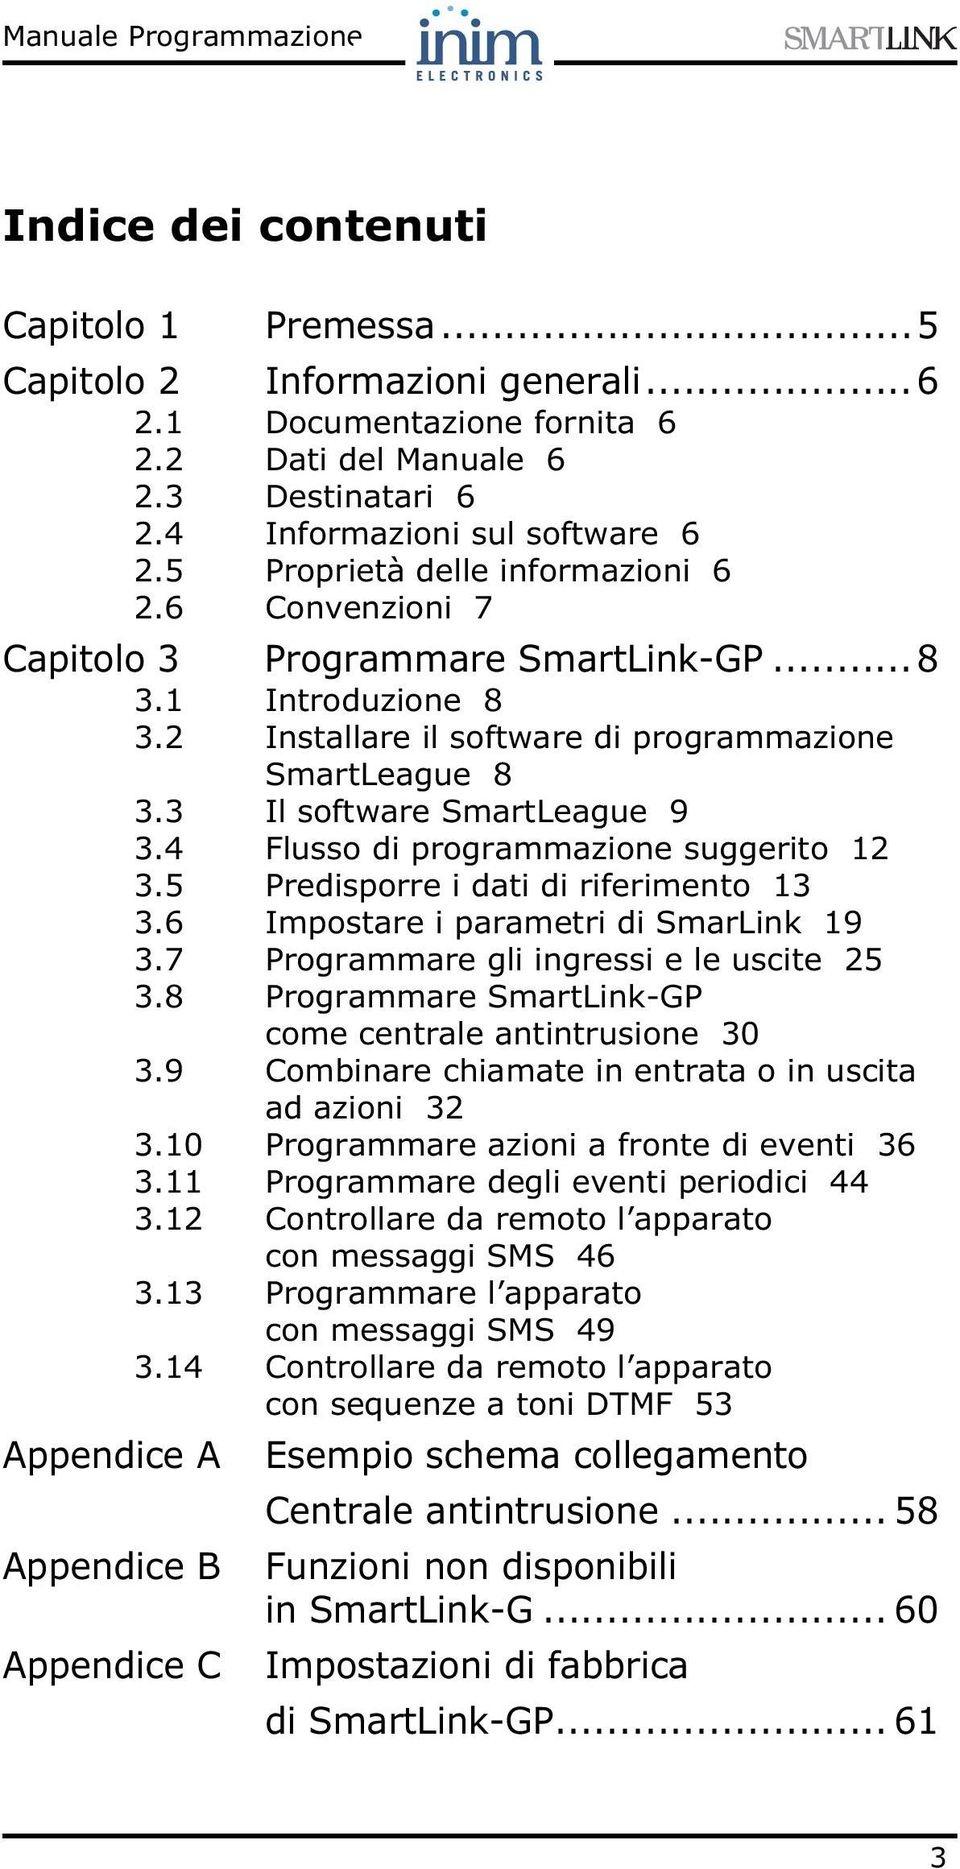 3 Il software SmartLeague 9 3.4 Flusso di programmazione suggerito 12 3.5 Predisporre i dati di riferimento 13 3.6 Impostare i parametri di SmarLink 19 3.7 Programmare gli ingressi e le uscite 25 3.